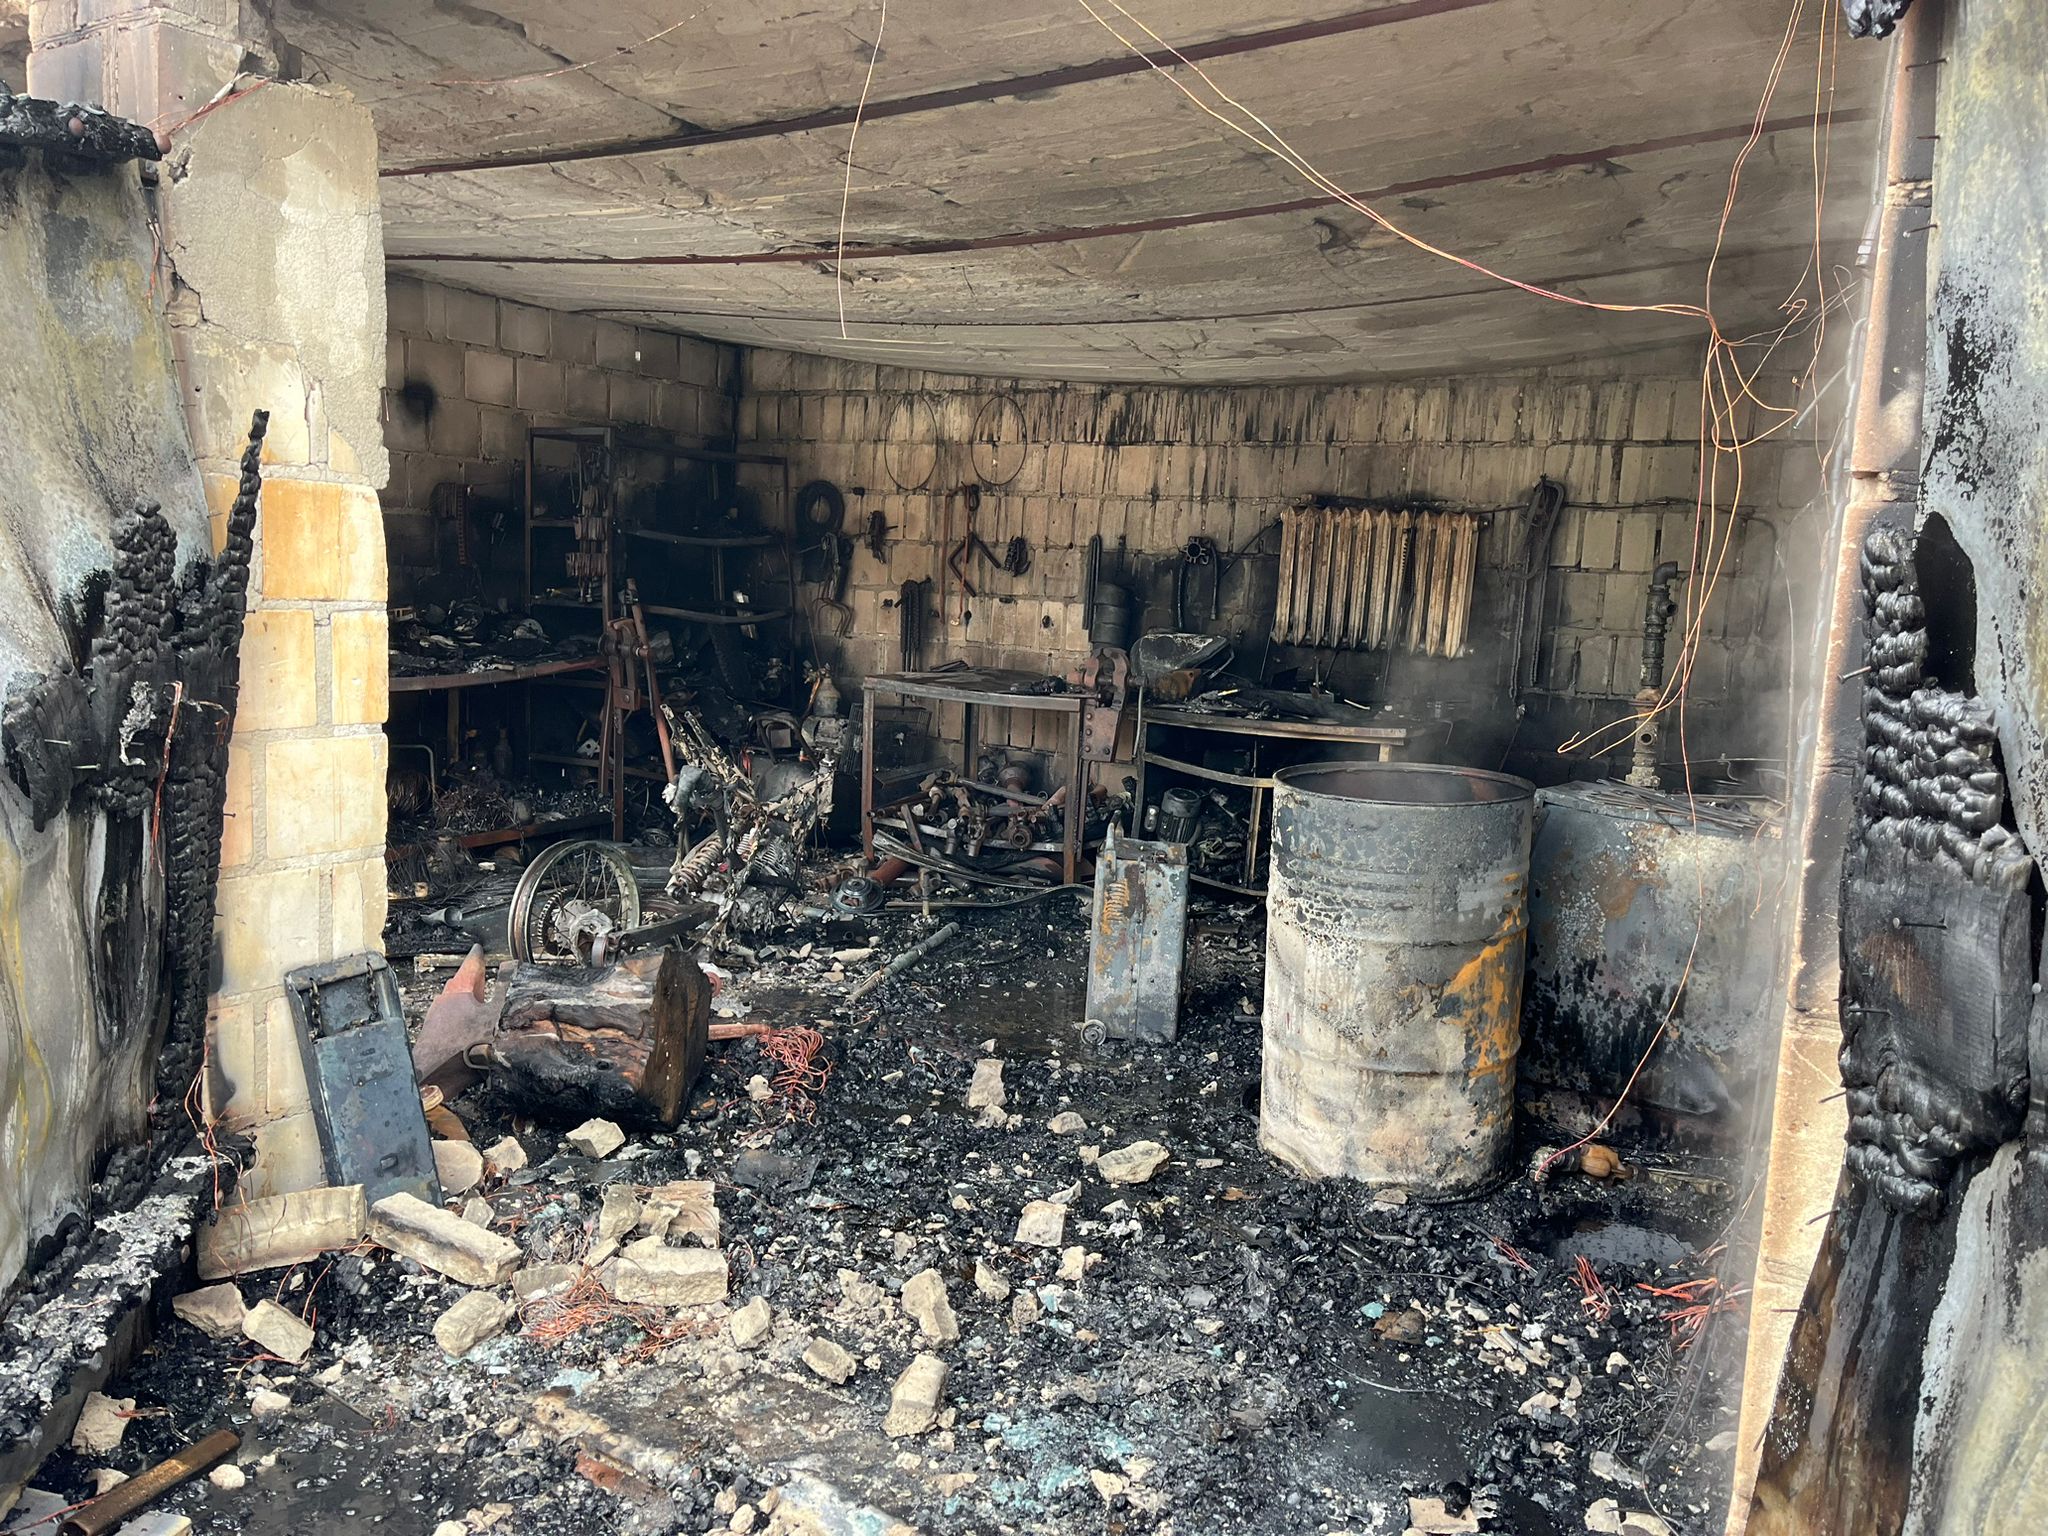 Zdjęcie przedstawia spaloną część garażową budynku, spalony sprzęt i wyposażenie garażu